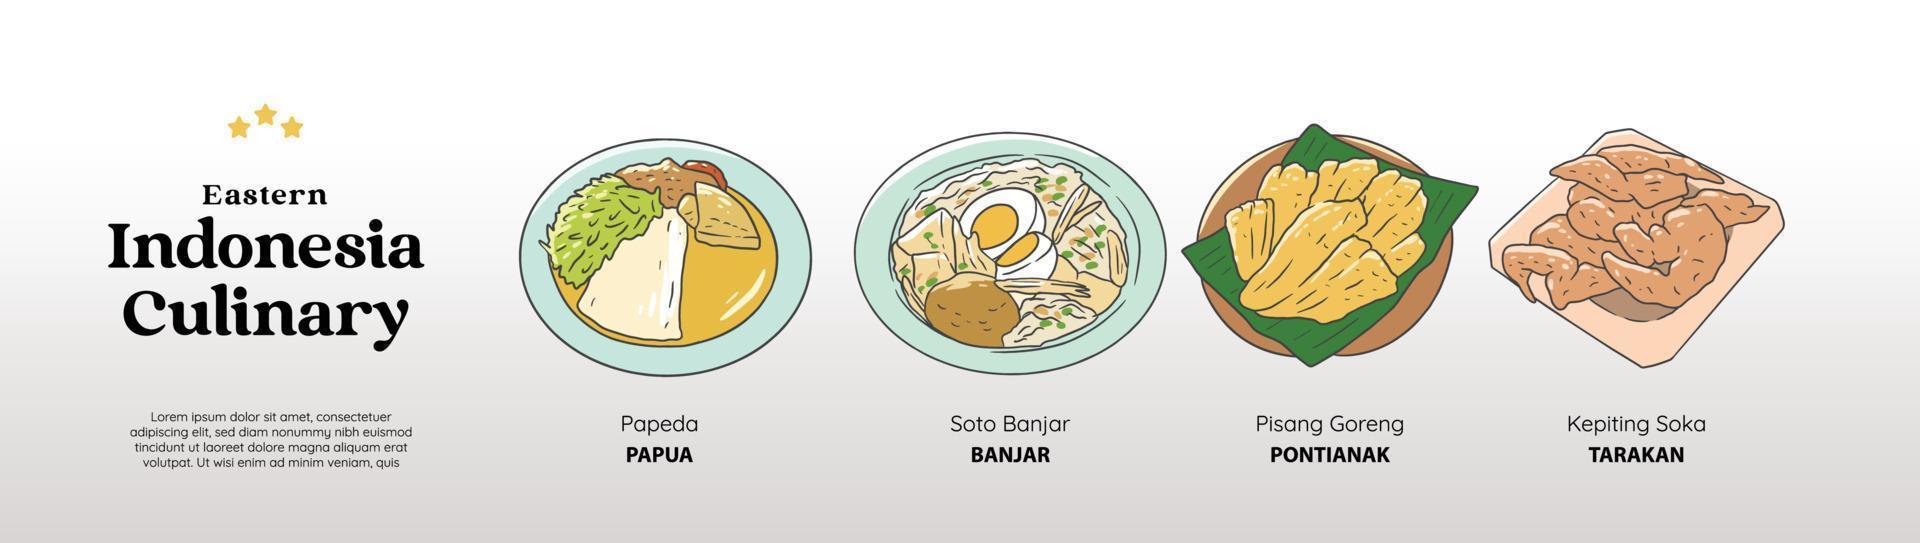 isoliertes papua kulinarisches lebensmittelpaket. traditionelle küche handgezeichneter illustrationsvektor. vektor